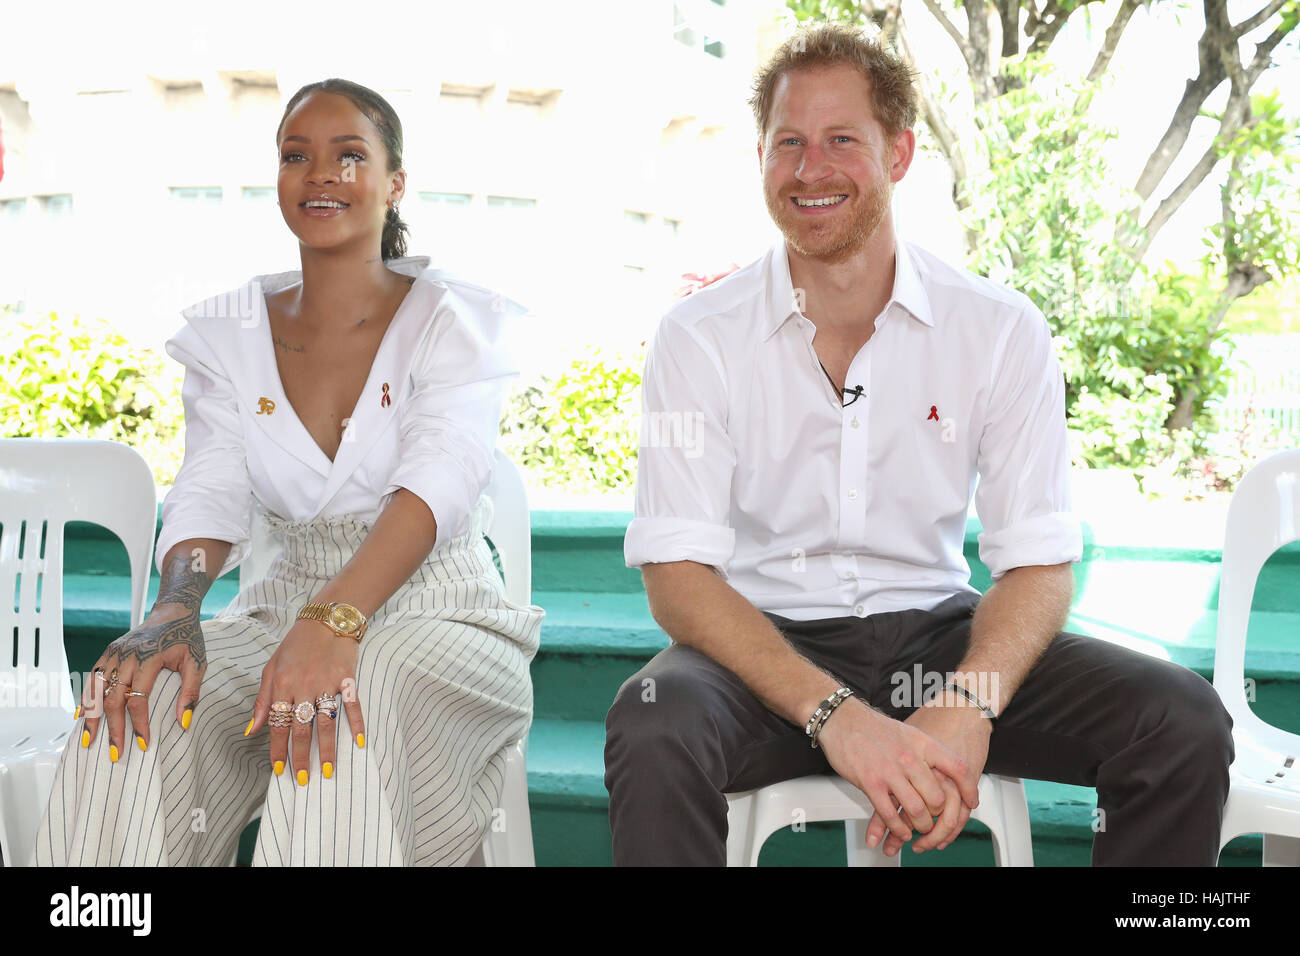 Snger, Rihanna et le prince Harry sur scène, à l'un au courant' événement organisé par la Commission nationale de lutte contre le VIH/SIDA dans la région de Bridgetown, Barbade, au cours de sa tournée de la région des Caraïbes. Banque D'Images